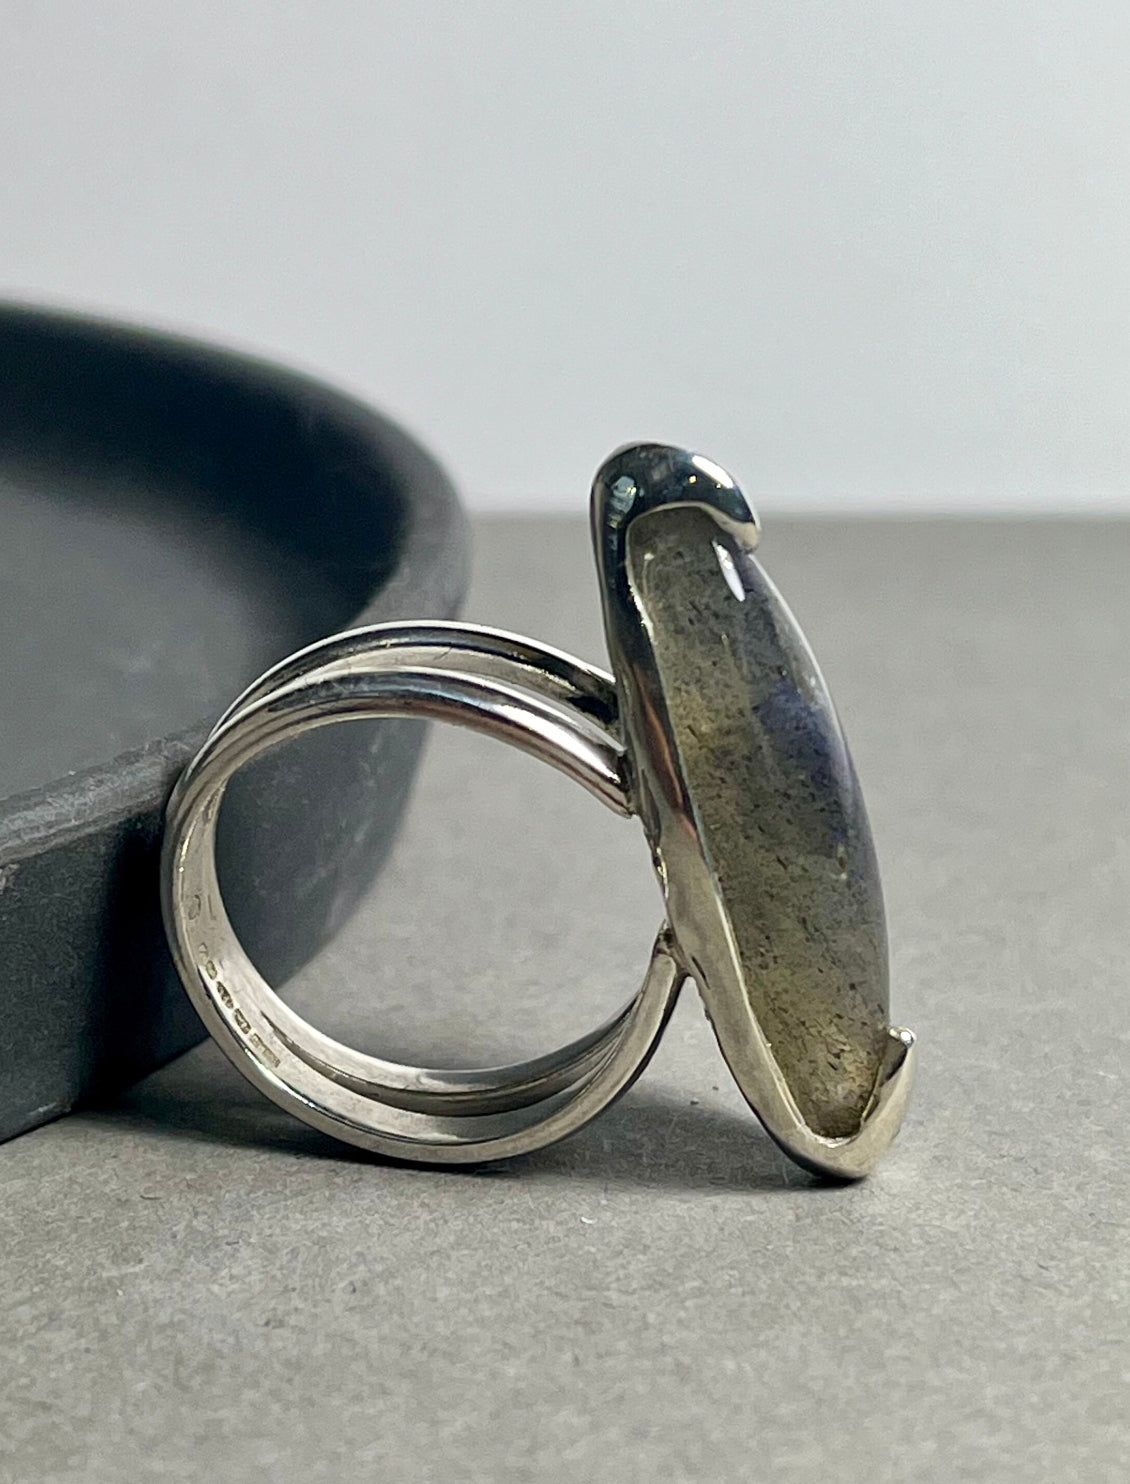 Large Marquise Silver Labradorite Ring